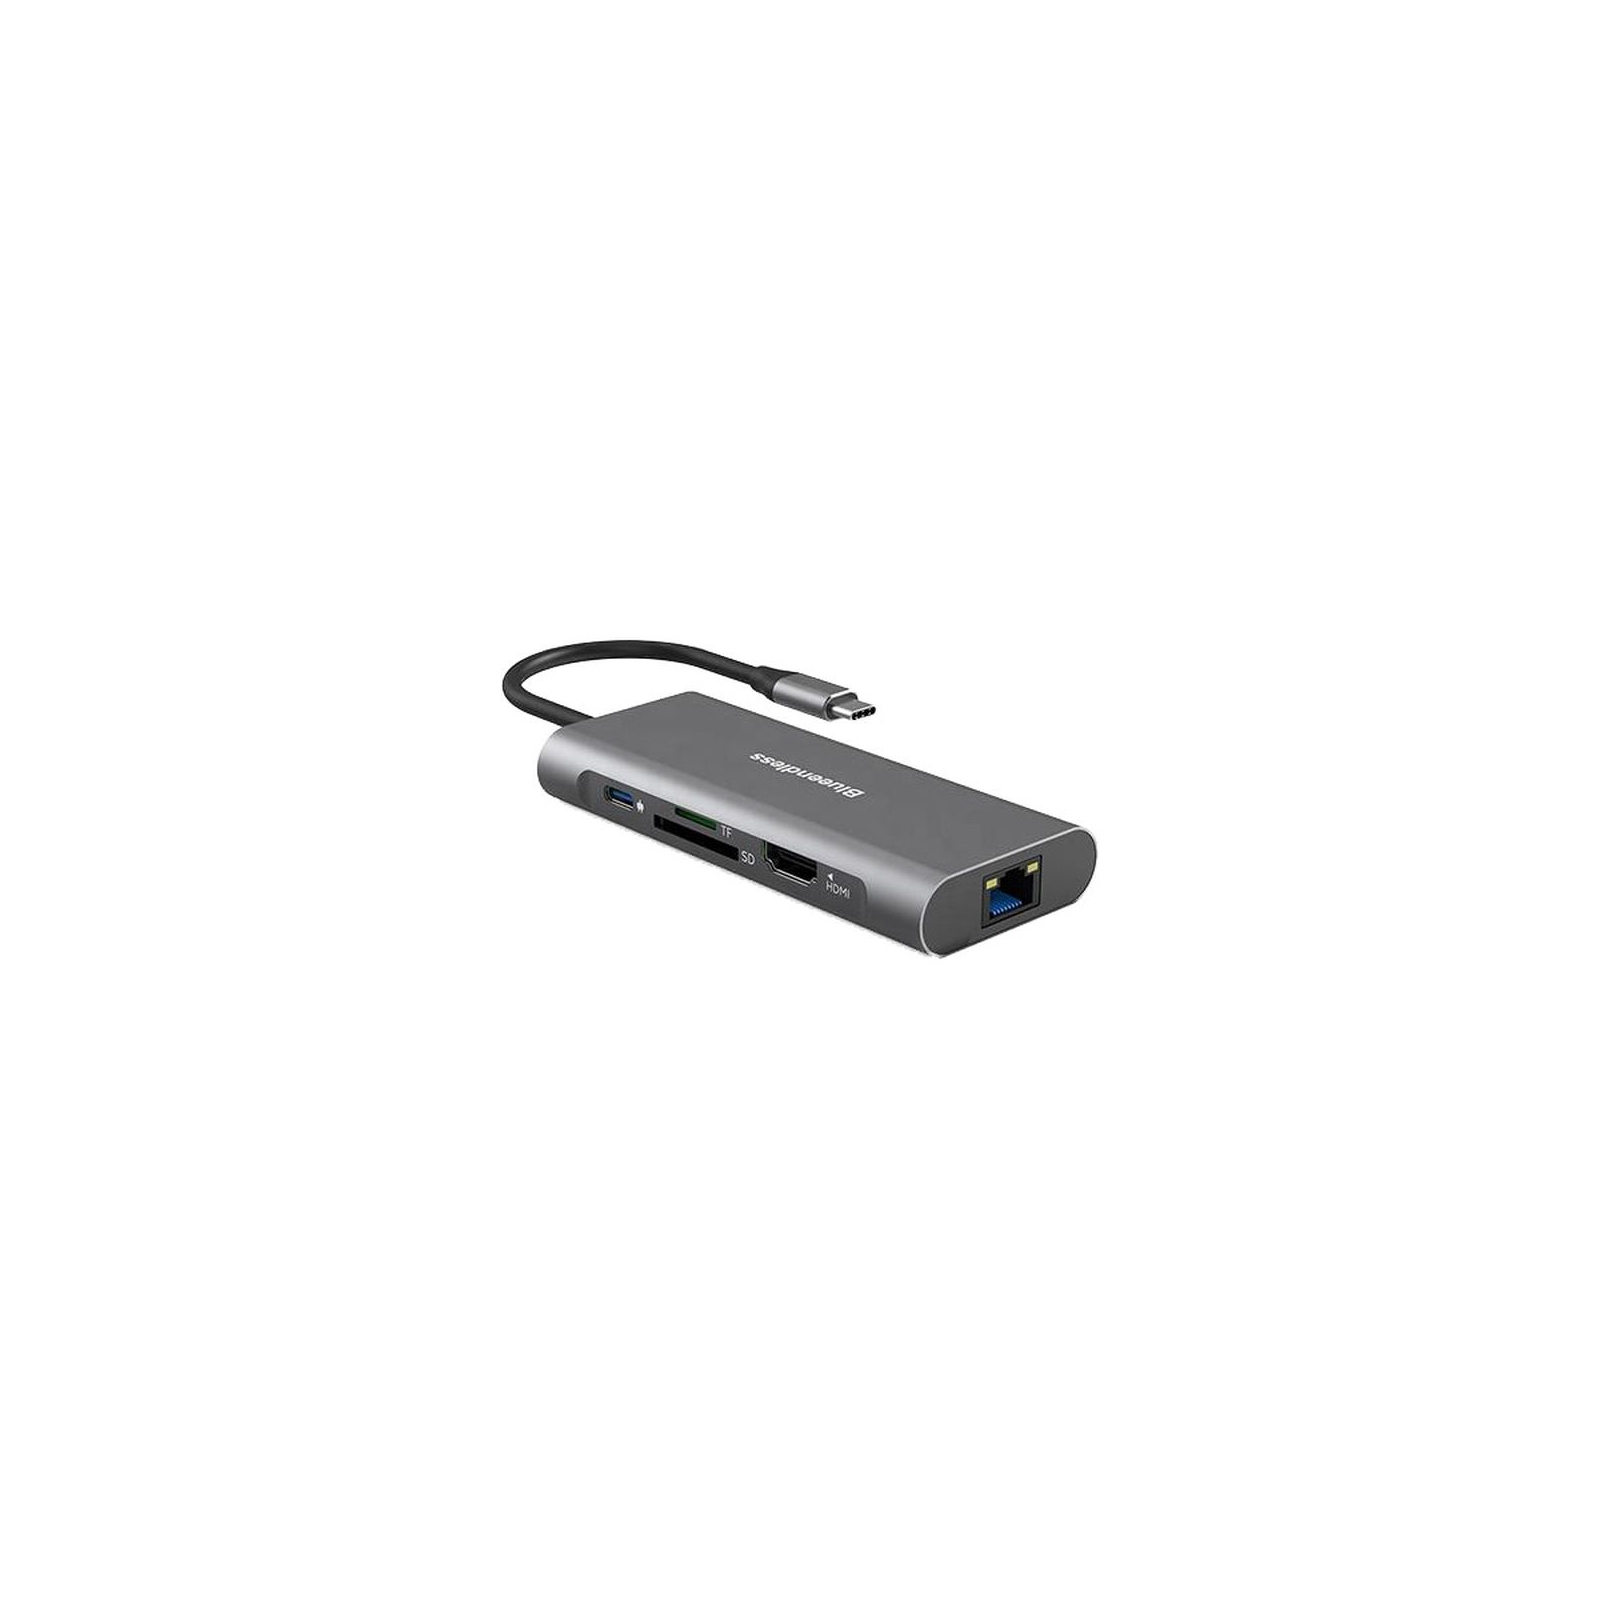 Концентратор PowerPlant USB-C to 2xUSB 3.0, 1xUSB 2.0, 1xType-C (PD), HDMI, SD, RJ45 (CA913497) зображення 2